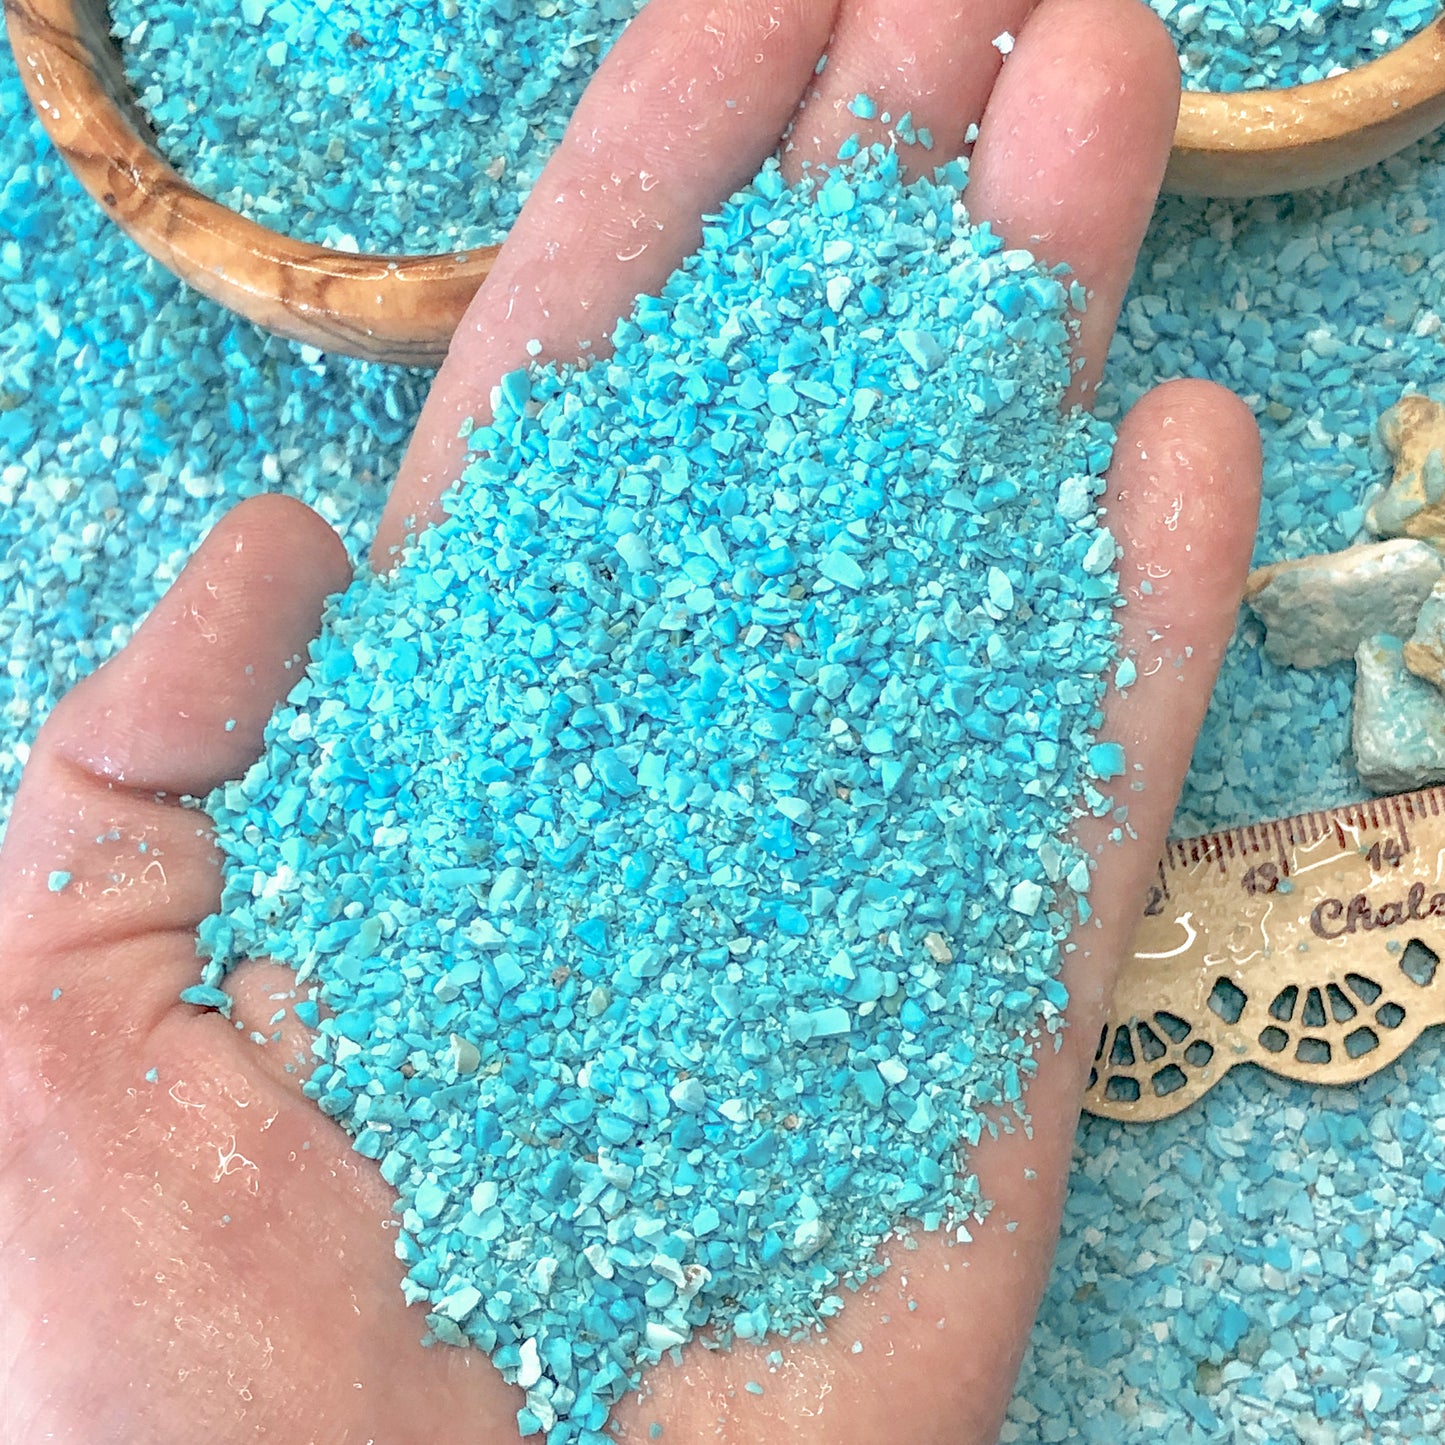 Crushed Blue Sleeping Beauty Turquoise from Arizona, Medium Crush, Sand Size, 2mm - 0.25mm